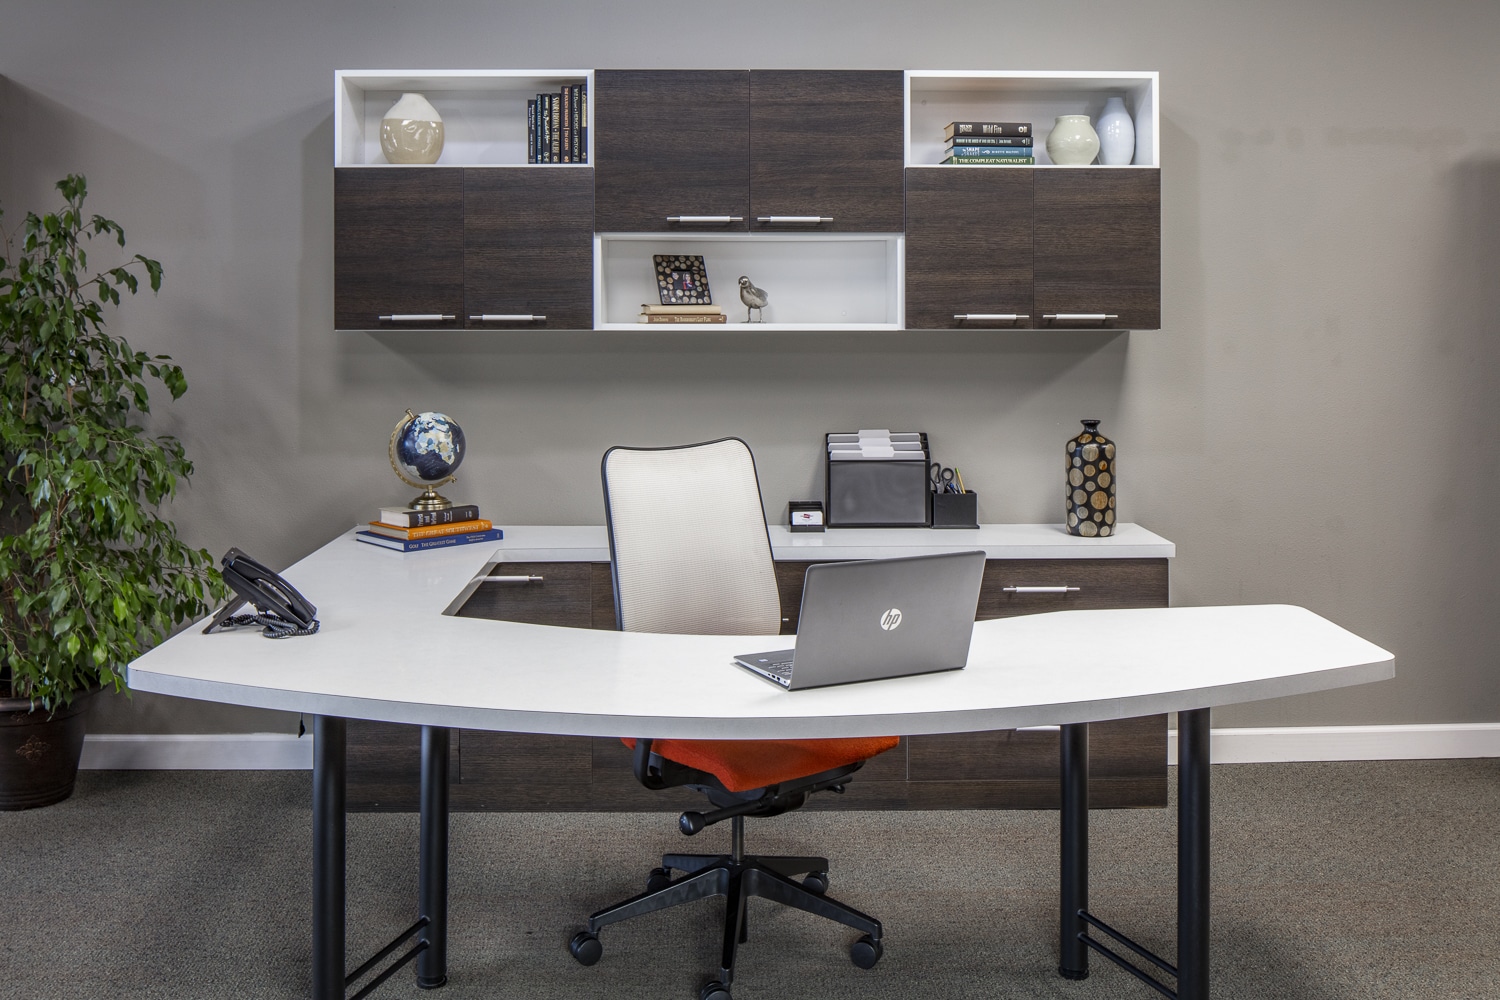 Modern wrap-around desk with mounted wall shelf storage